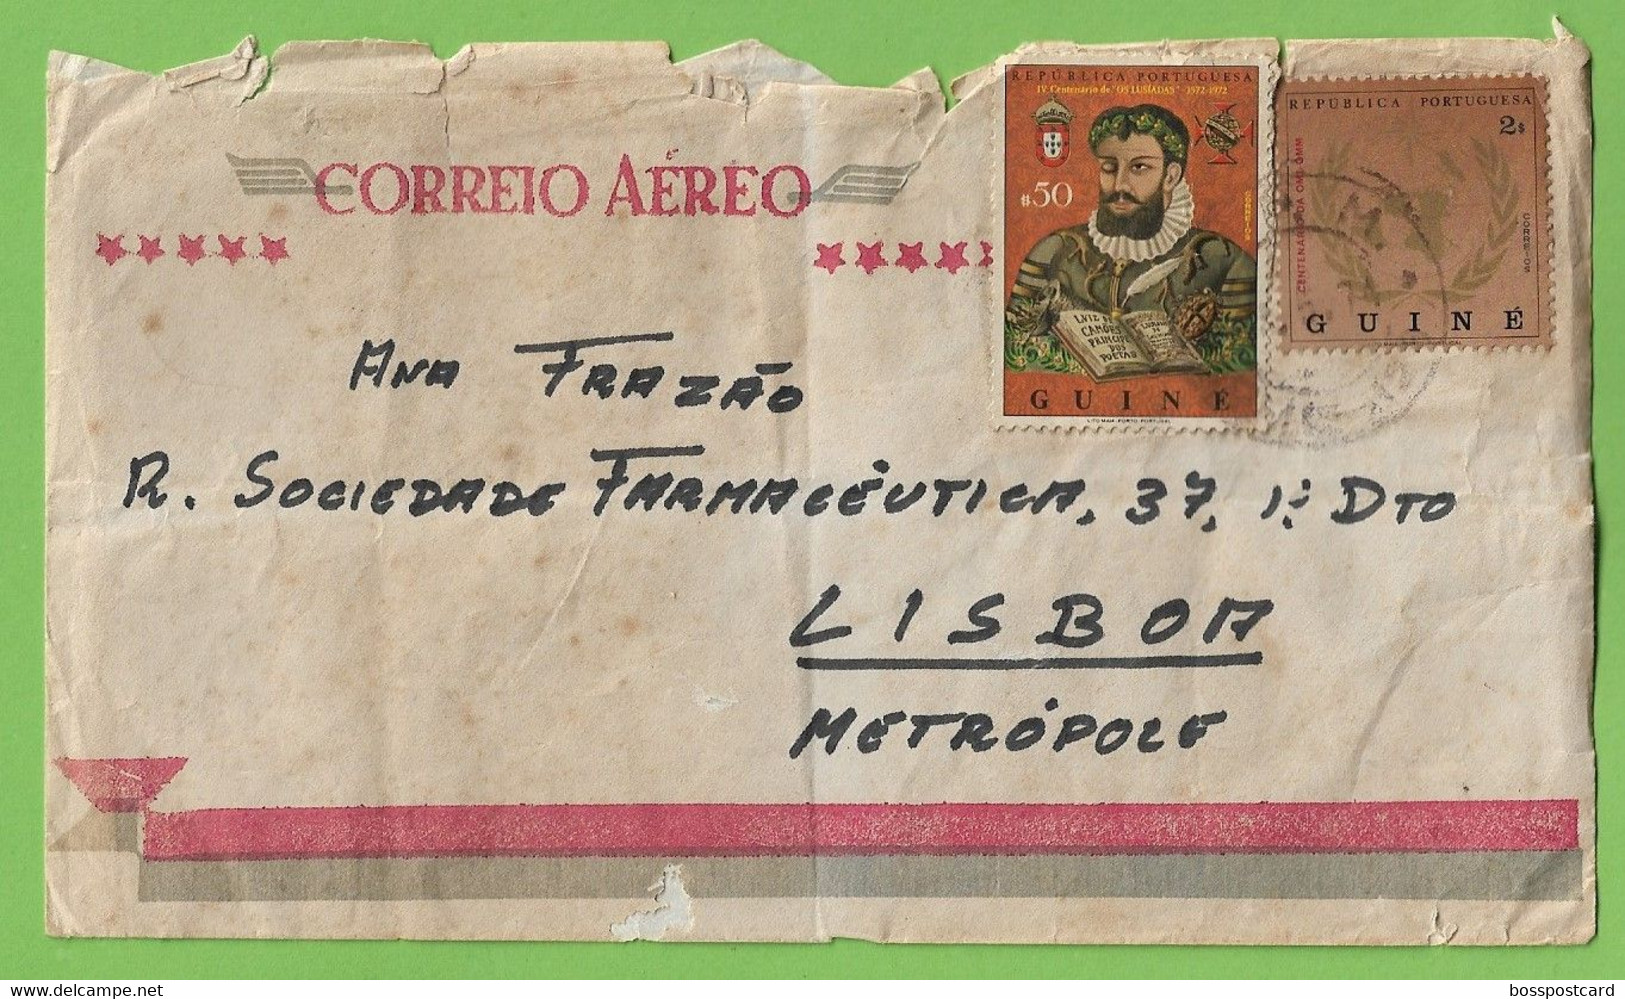 História Postal - Filatelia - Correio Aéreo - Airmail - Stamps - Timbres - Philately - Portugal - Guiné (danificado) - Usado